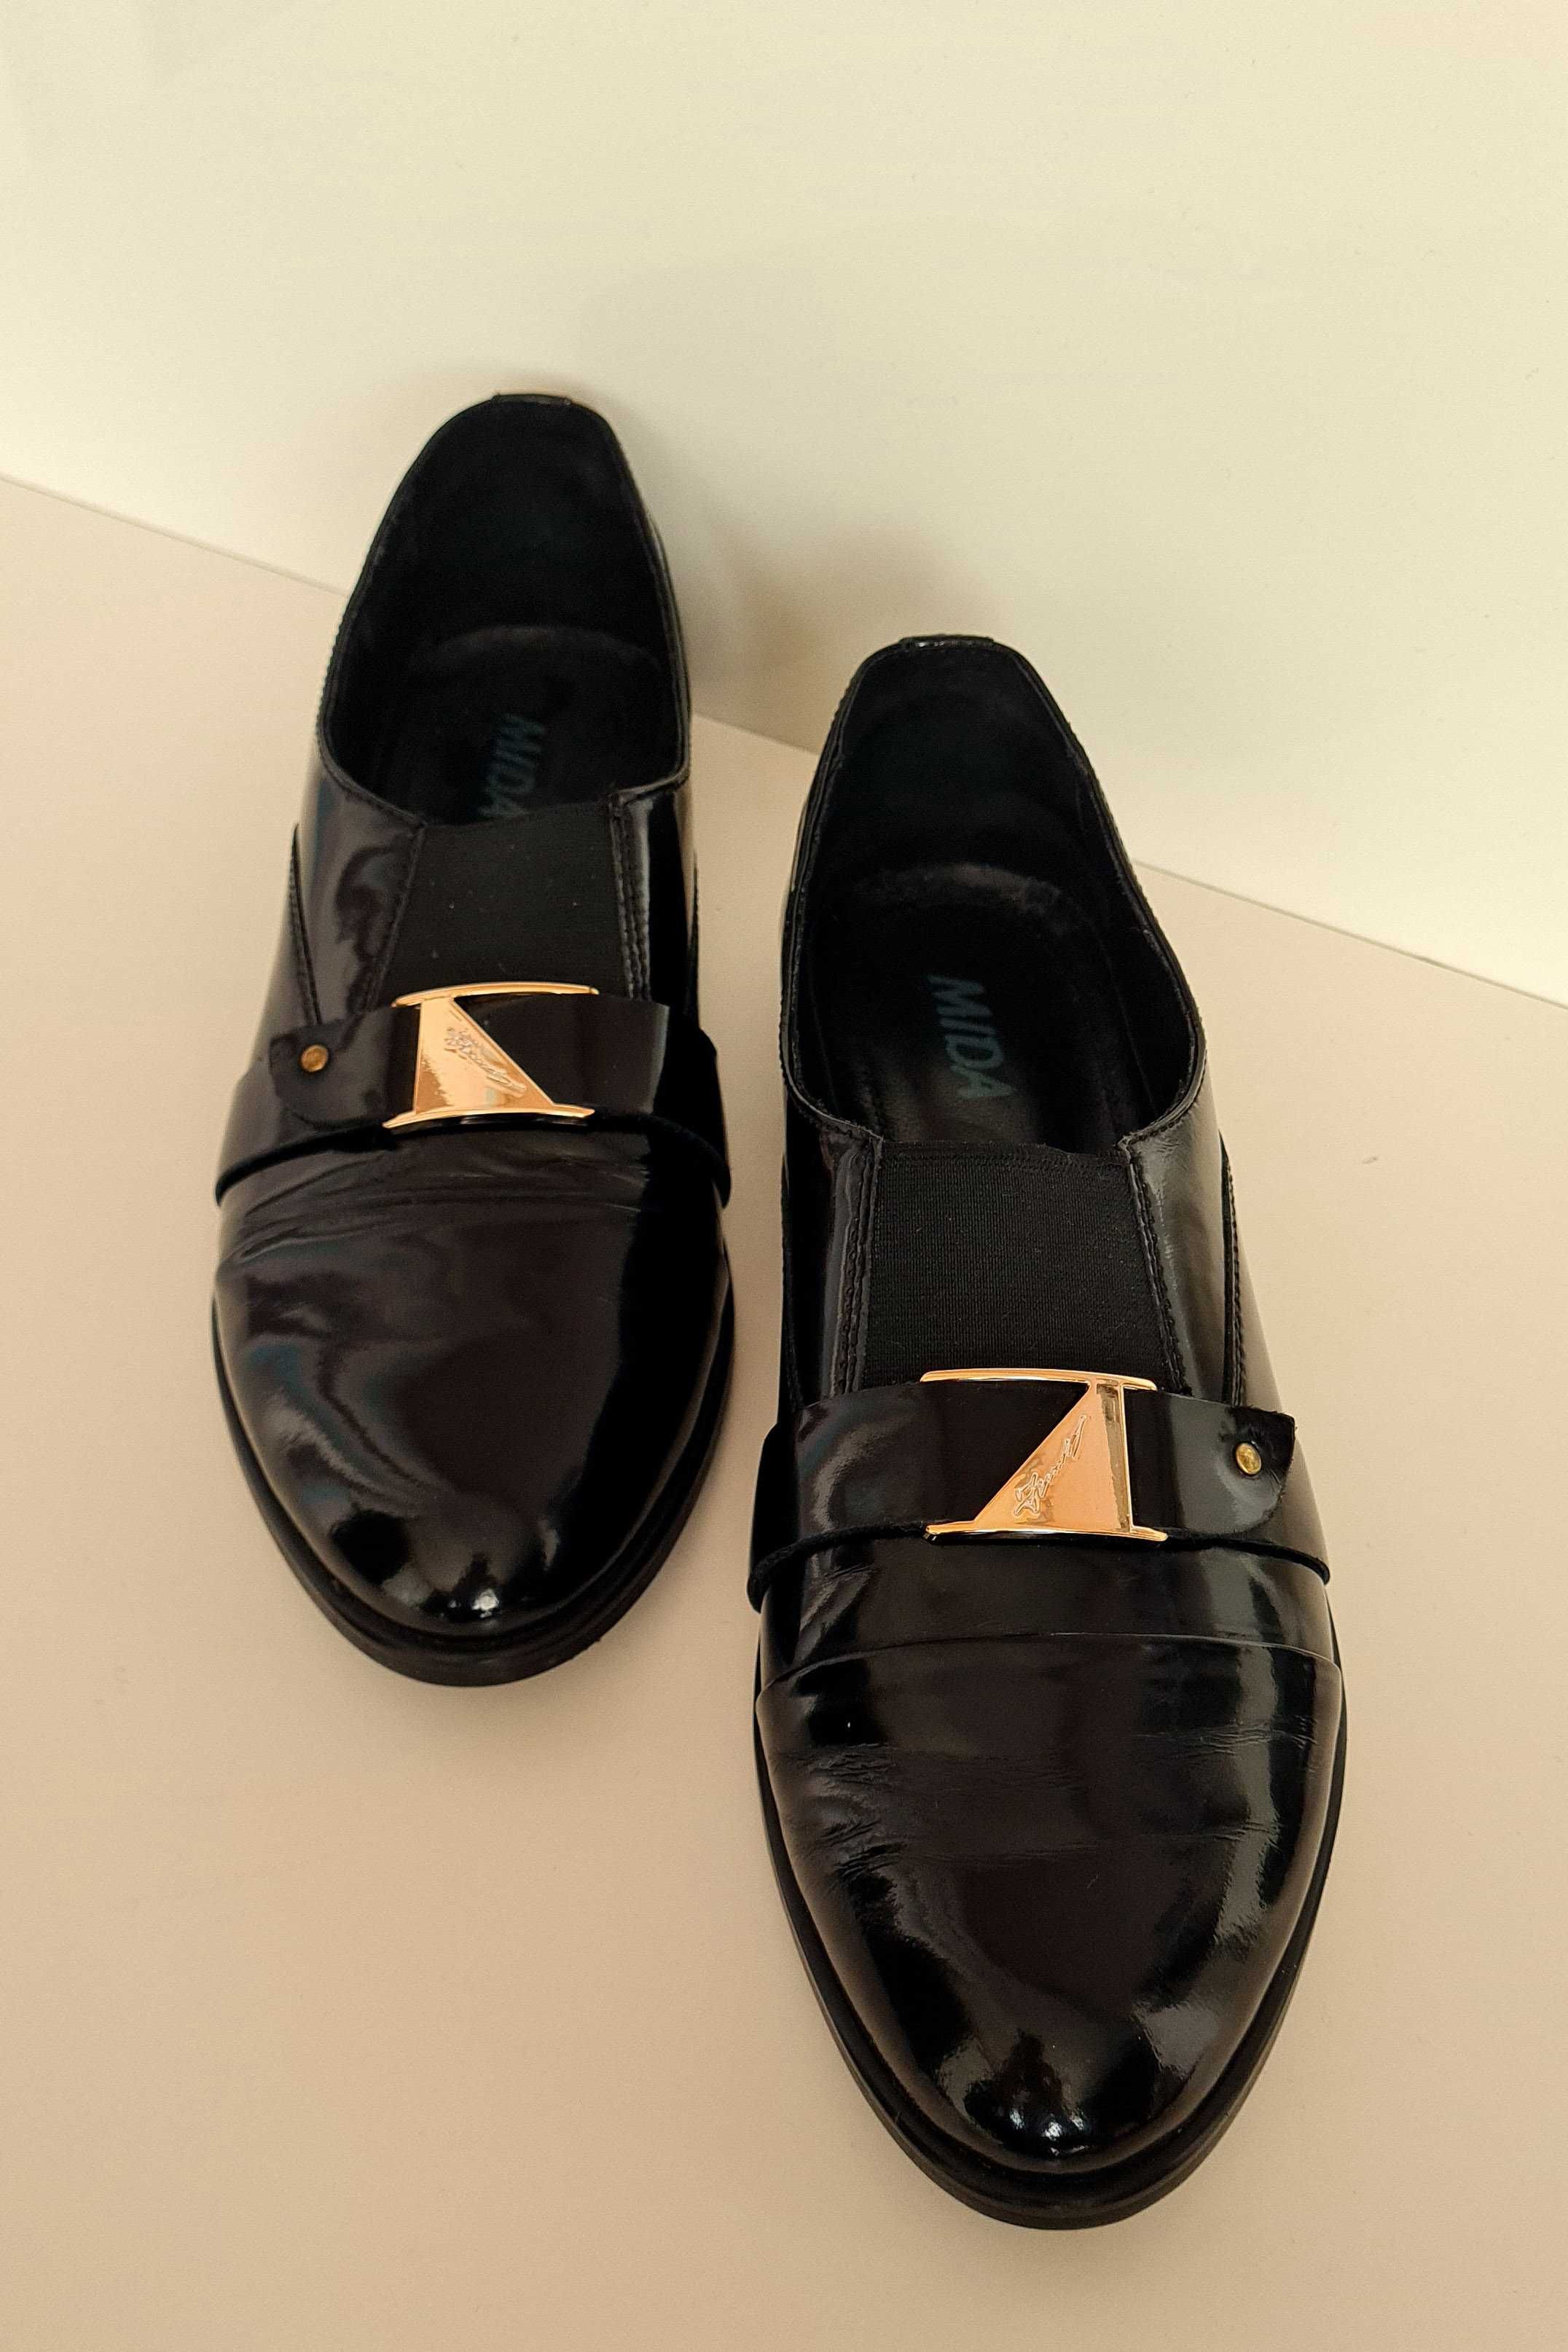 Туфли женские, лаковые без каблука | черные, кожа, размер 38